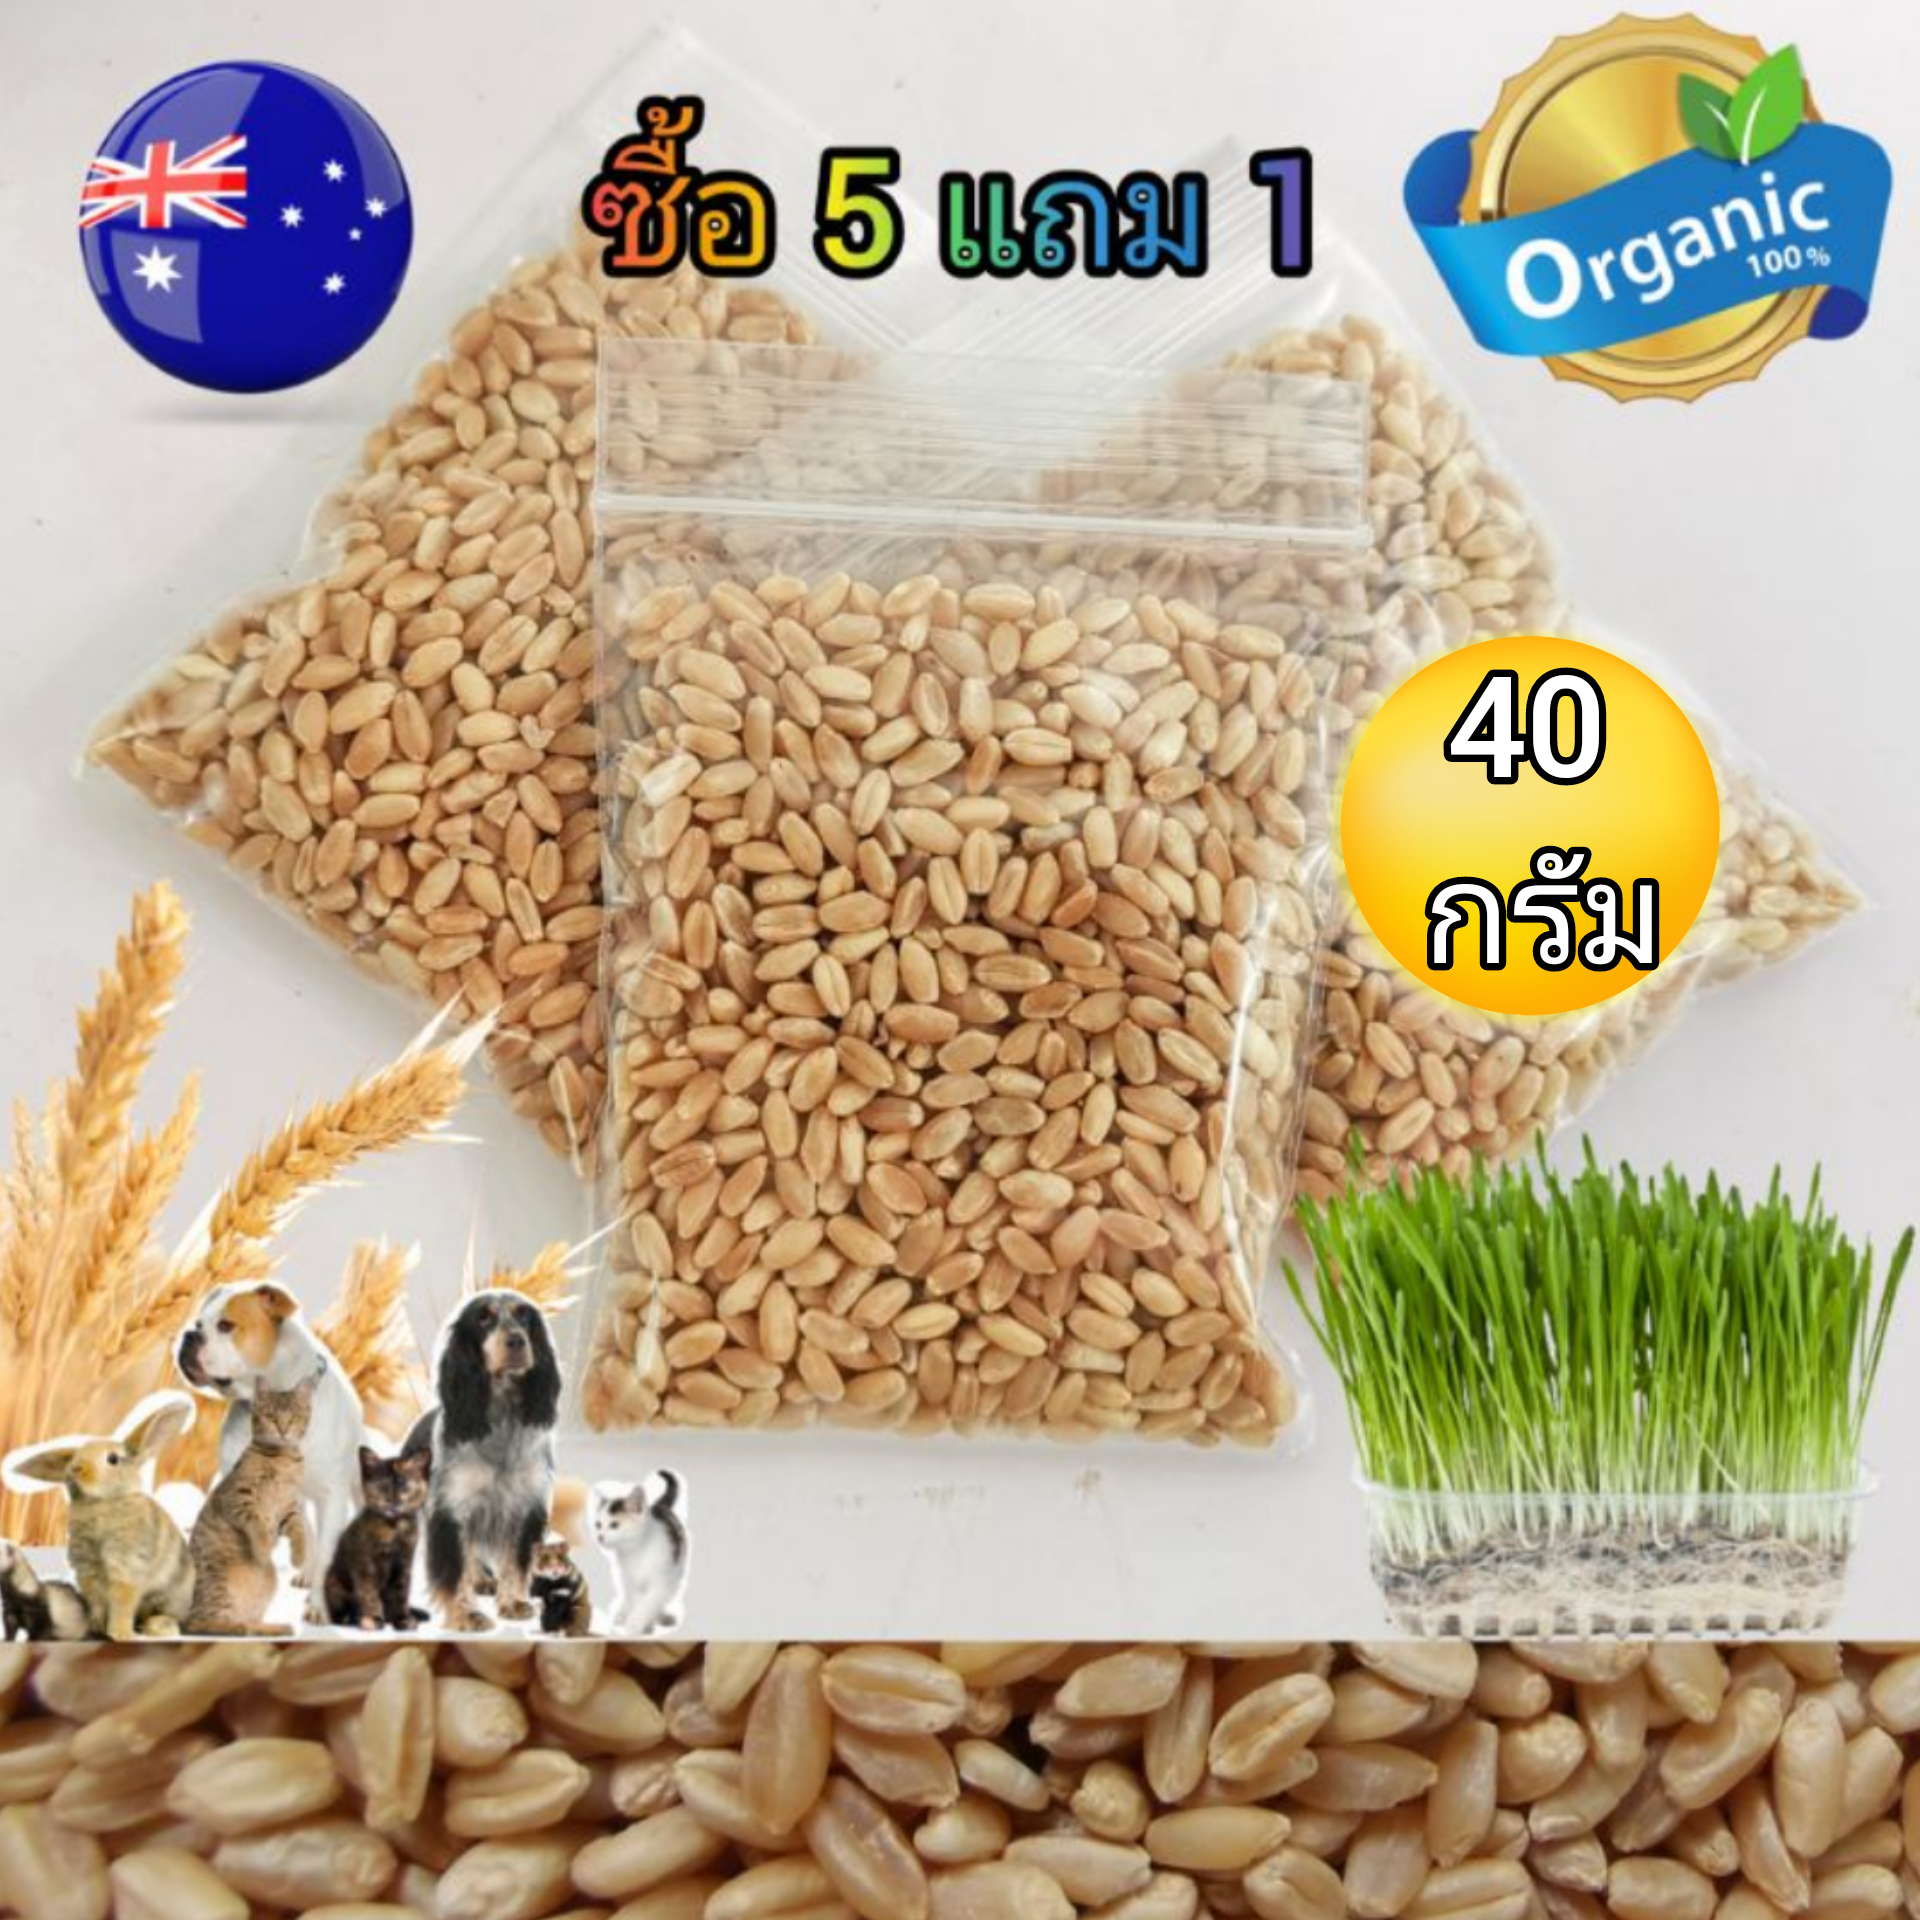 40 กรัม X 5 ถุง (แถม 1) ได้ถึง 6 ถุง เมล็ดข้าวสาลีเกรดนำเข้า ราคาถูก Australian Wheat หญ้าแมว อัตราการงอกสูง